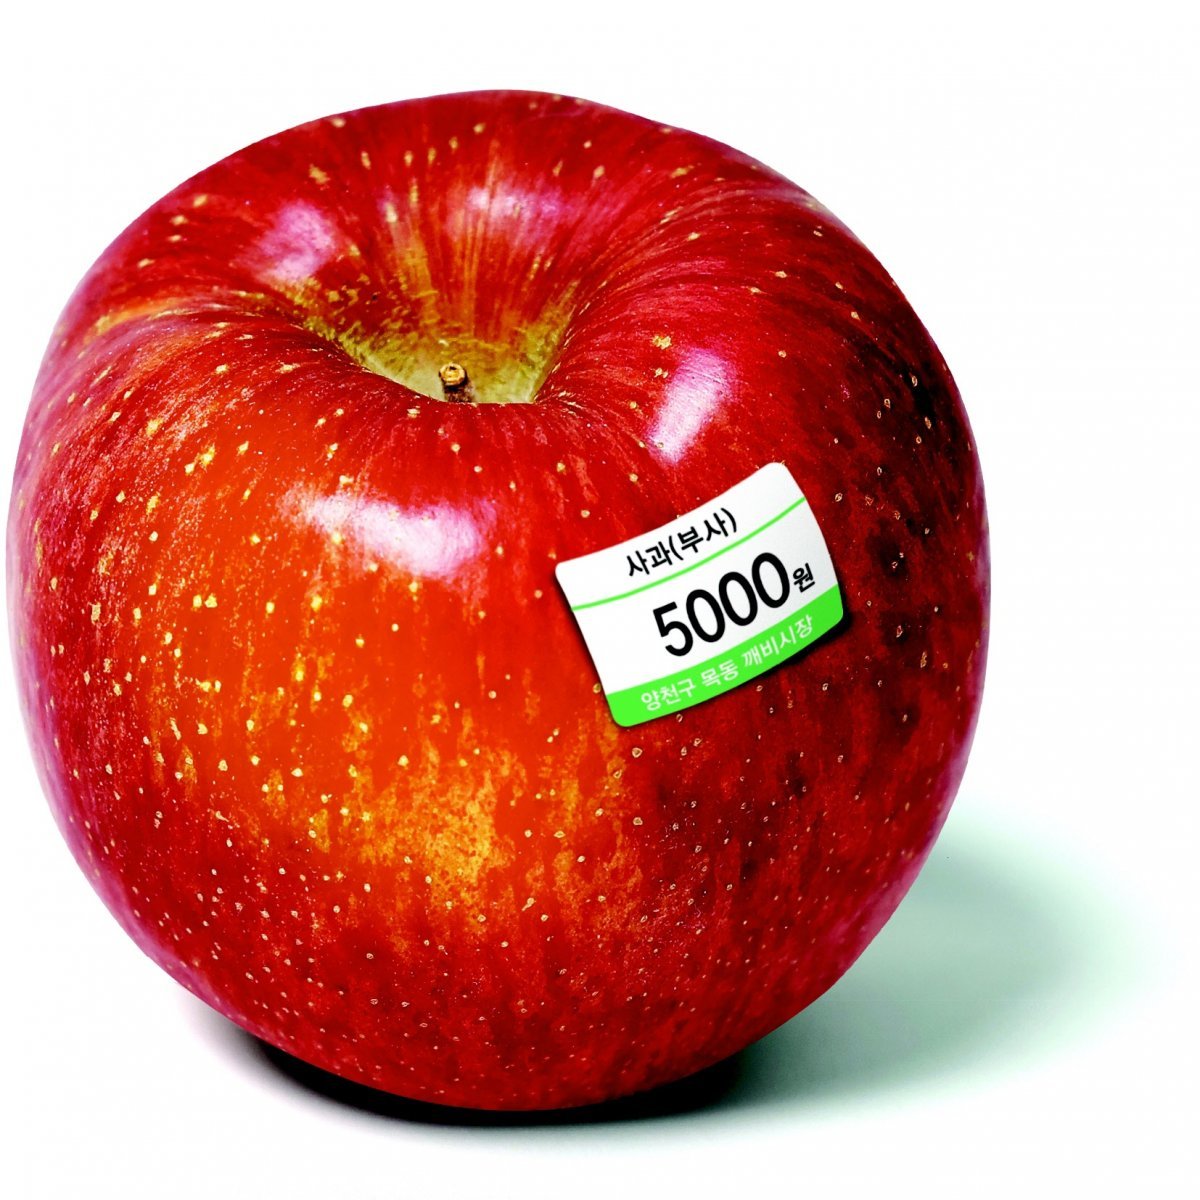 사과 한개 5000원… 과일값 32년만에 최대폭 올라